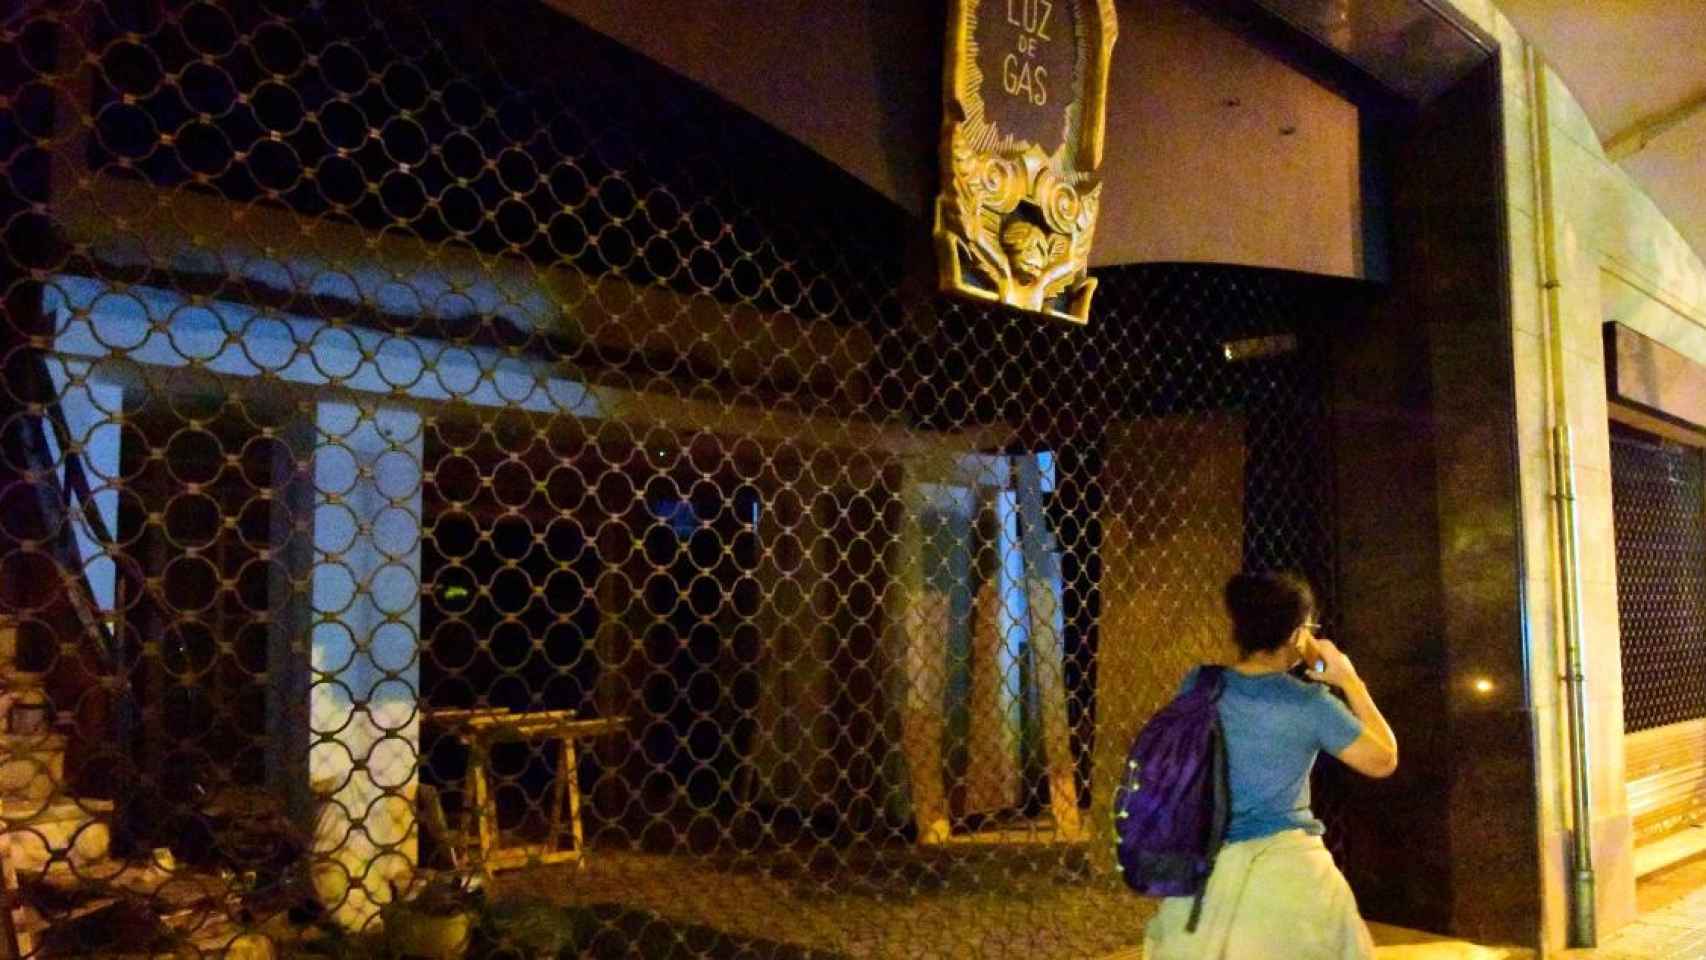 Luz de Gas, uno de los locales de ocio nocturno afectados por las restricciones contra el Covid-19 / EP